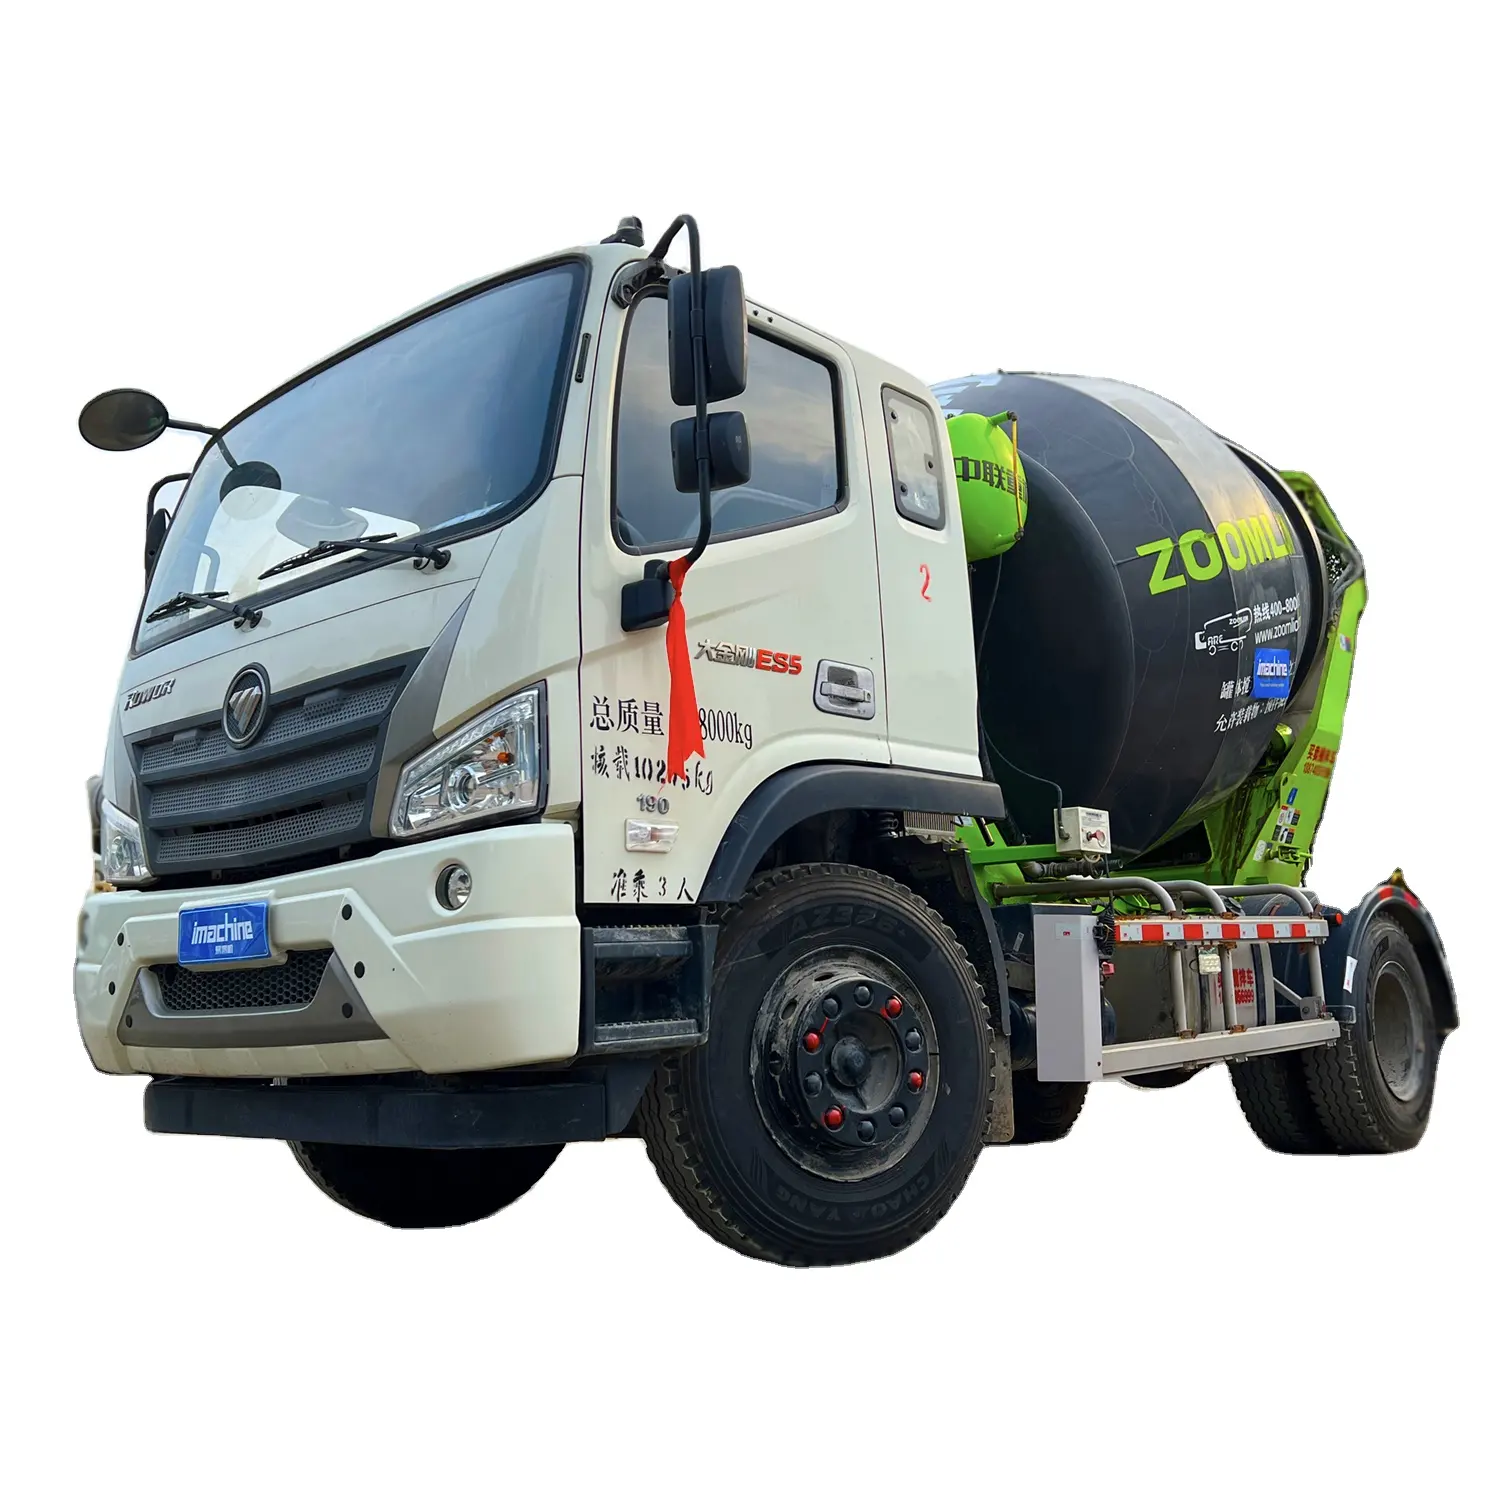 95% New Zoomli온 4m3 사용 소형 콘크리트 믹서 트럭 미니 시멘트 믹서 트럭 가격